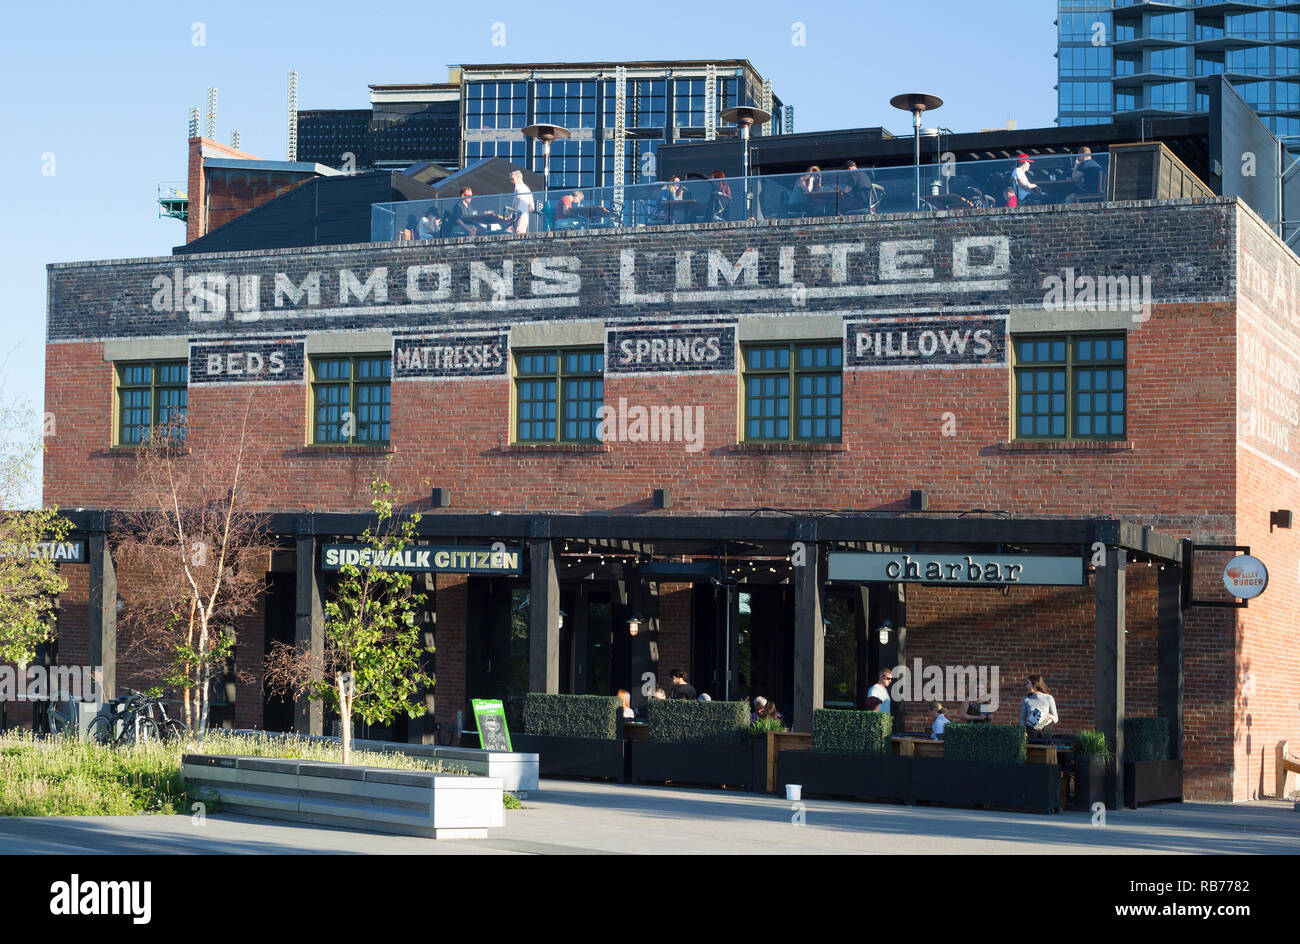 Simmons historisches Backsteingebäude in East Village. Erbaut im Jahr 1912, war es ursprünglich eine Fabrik Lager und ist heute ein Café, Restaurant und Bäckerei. Stockfoto